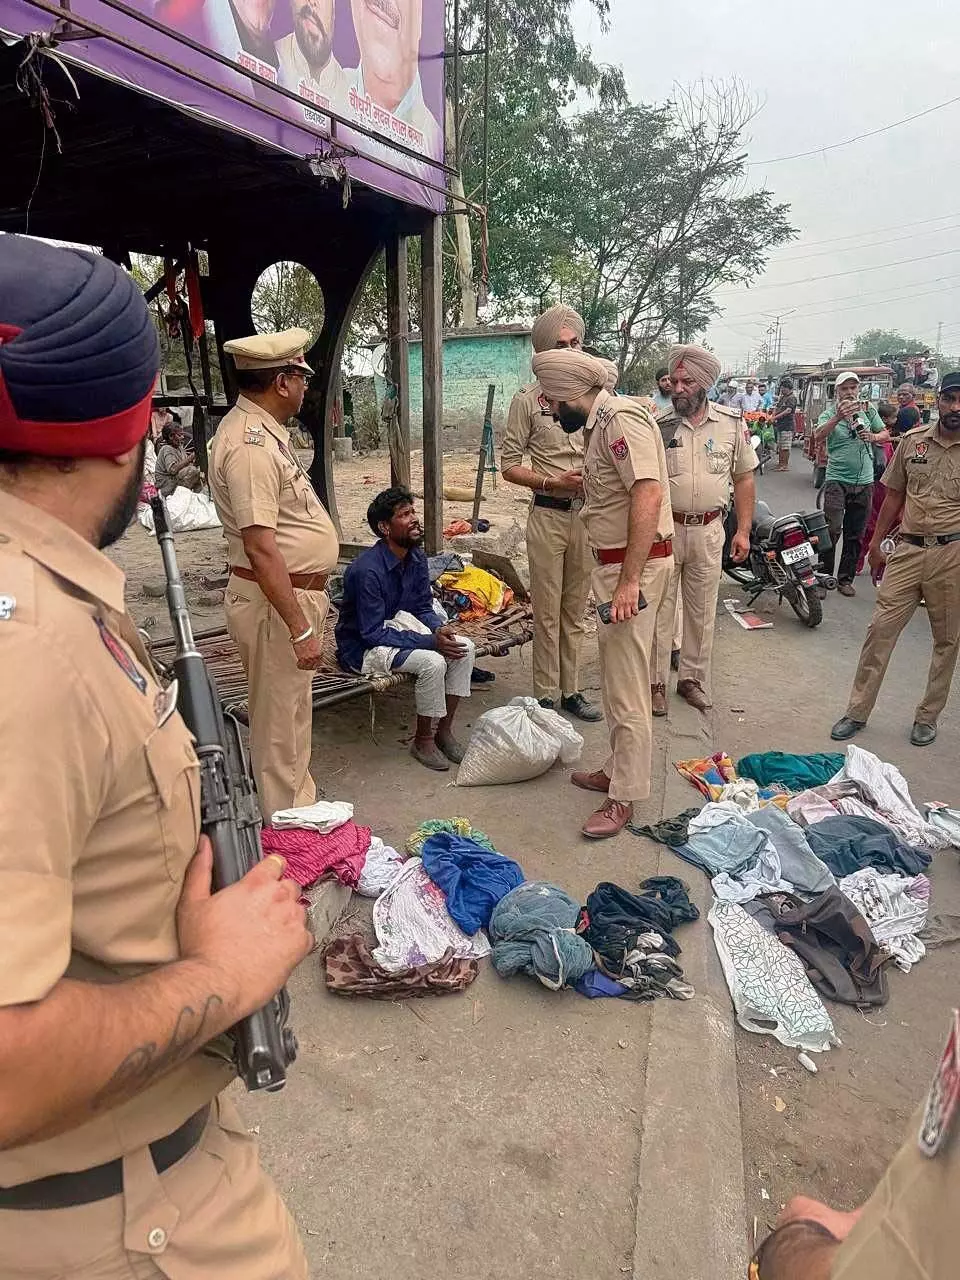 Punjab News: मादक पदार्थ के साथ 3 लोग गिरफ्तार, घेराबंदी और तलाशी अभियान जारी